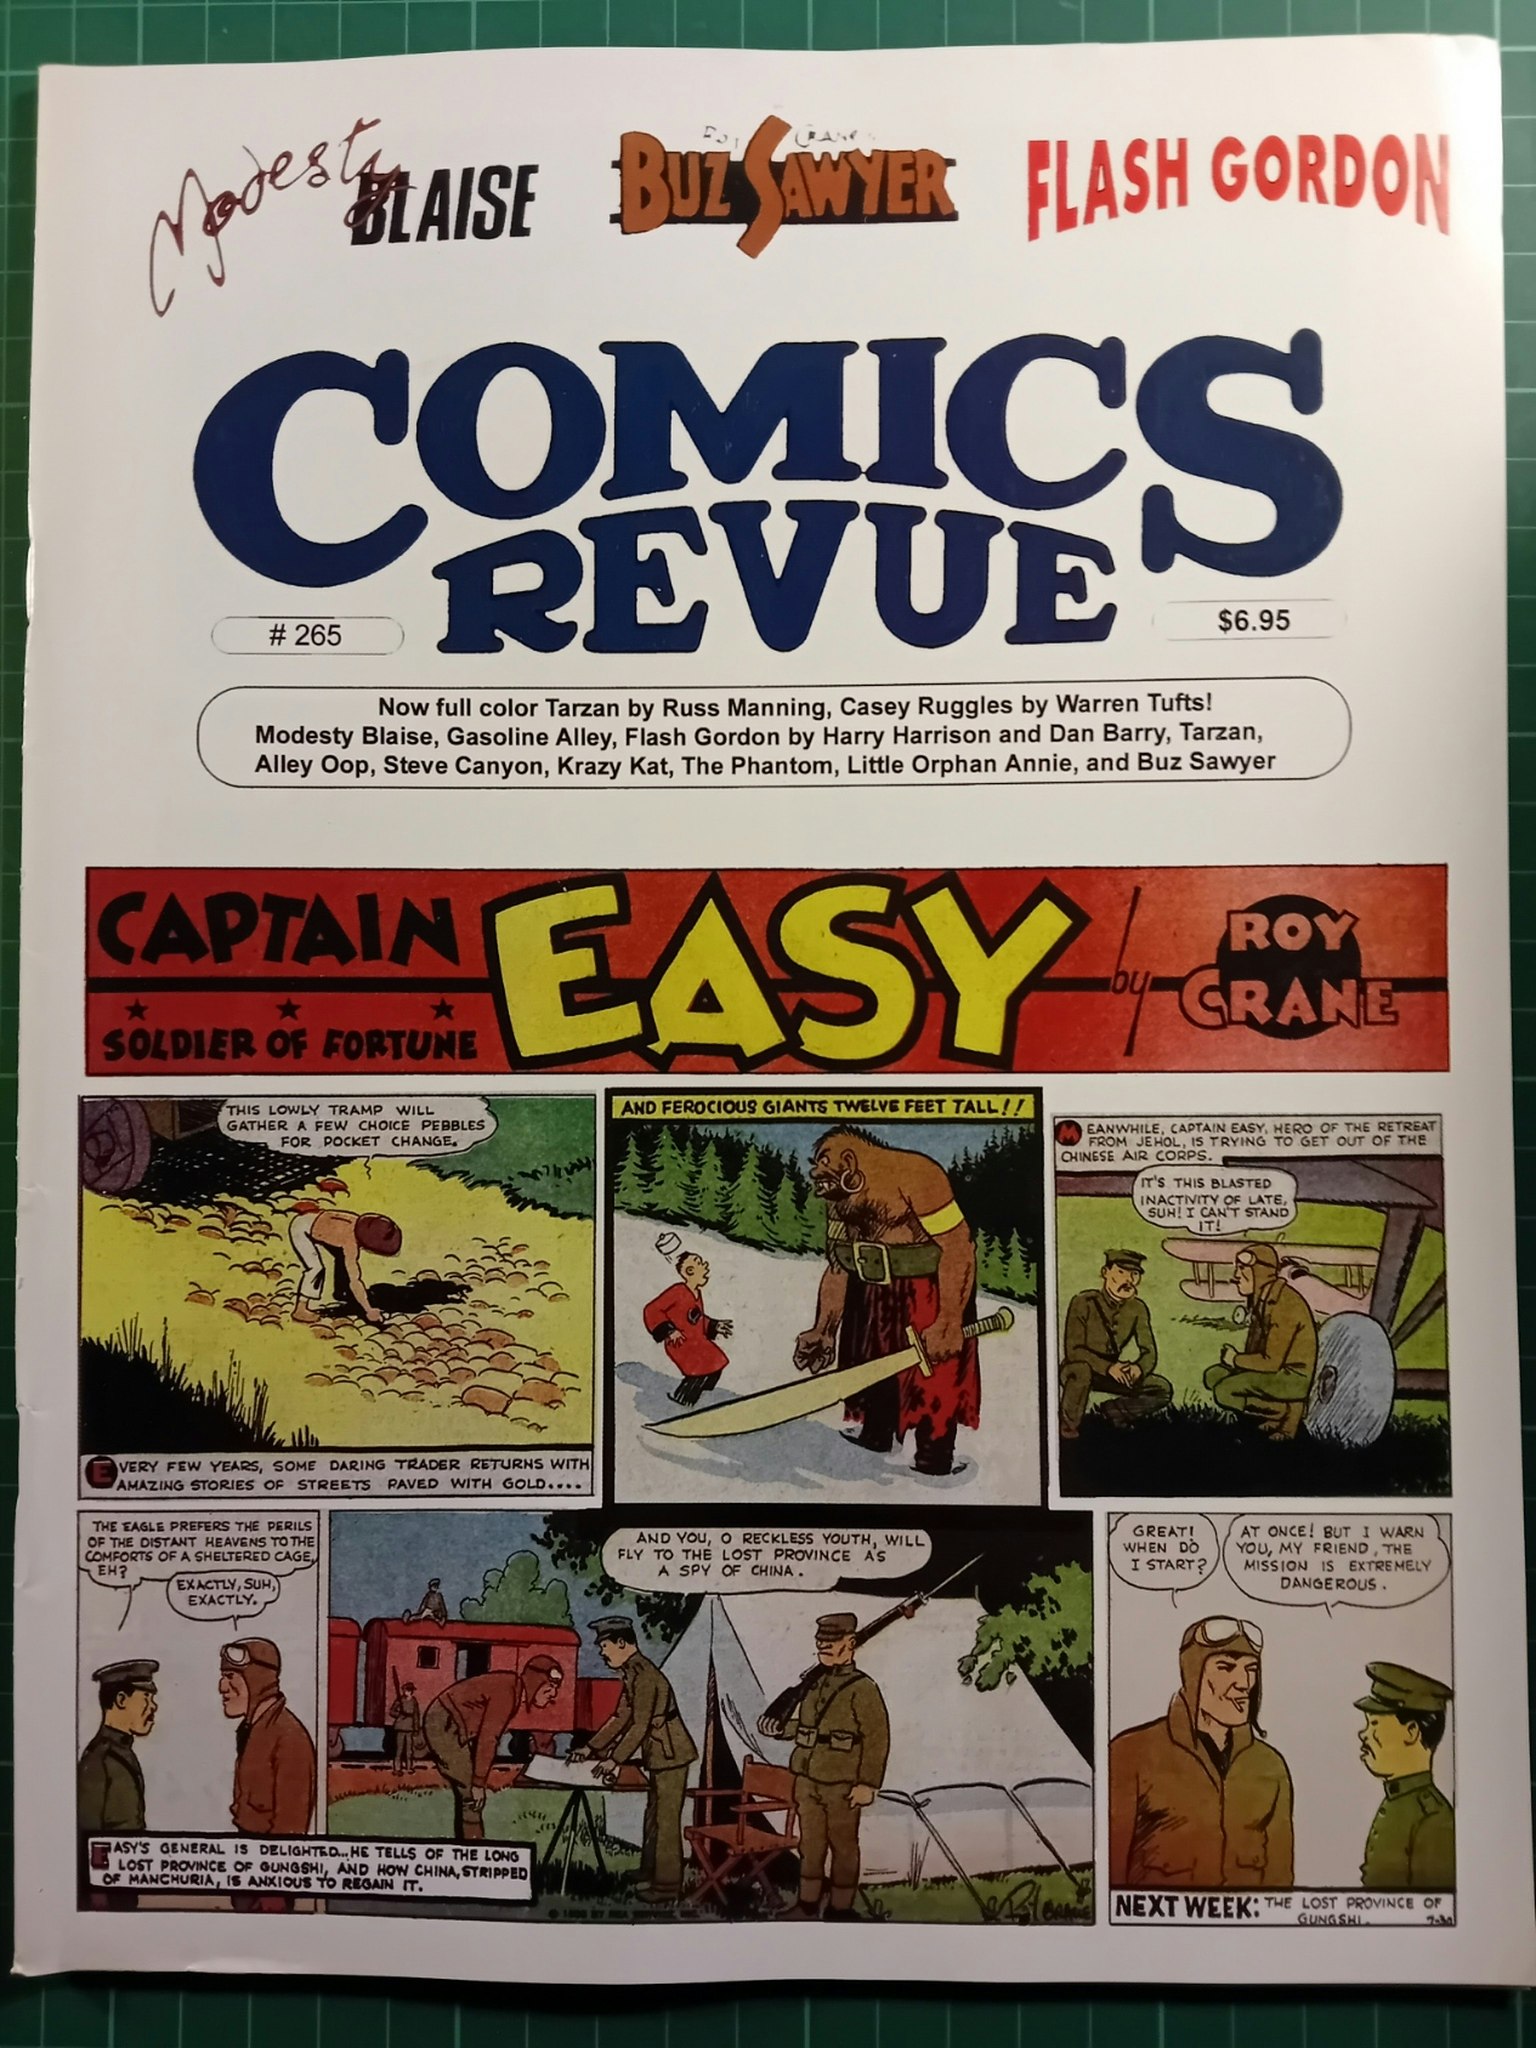 Comics revue #265